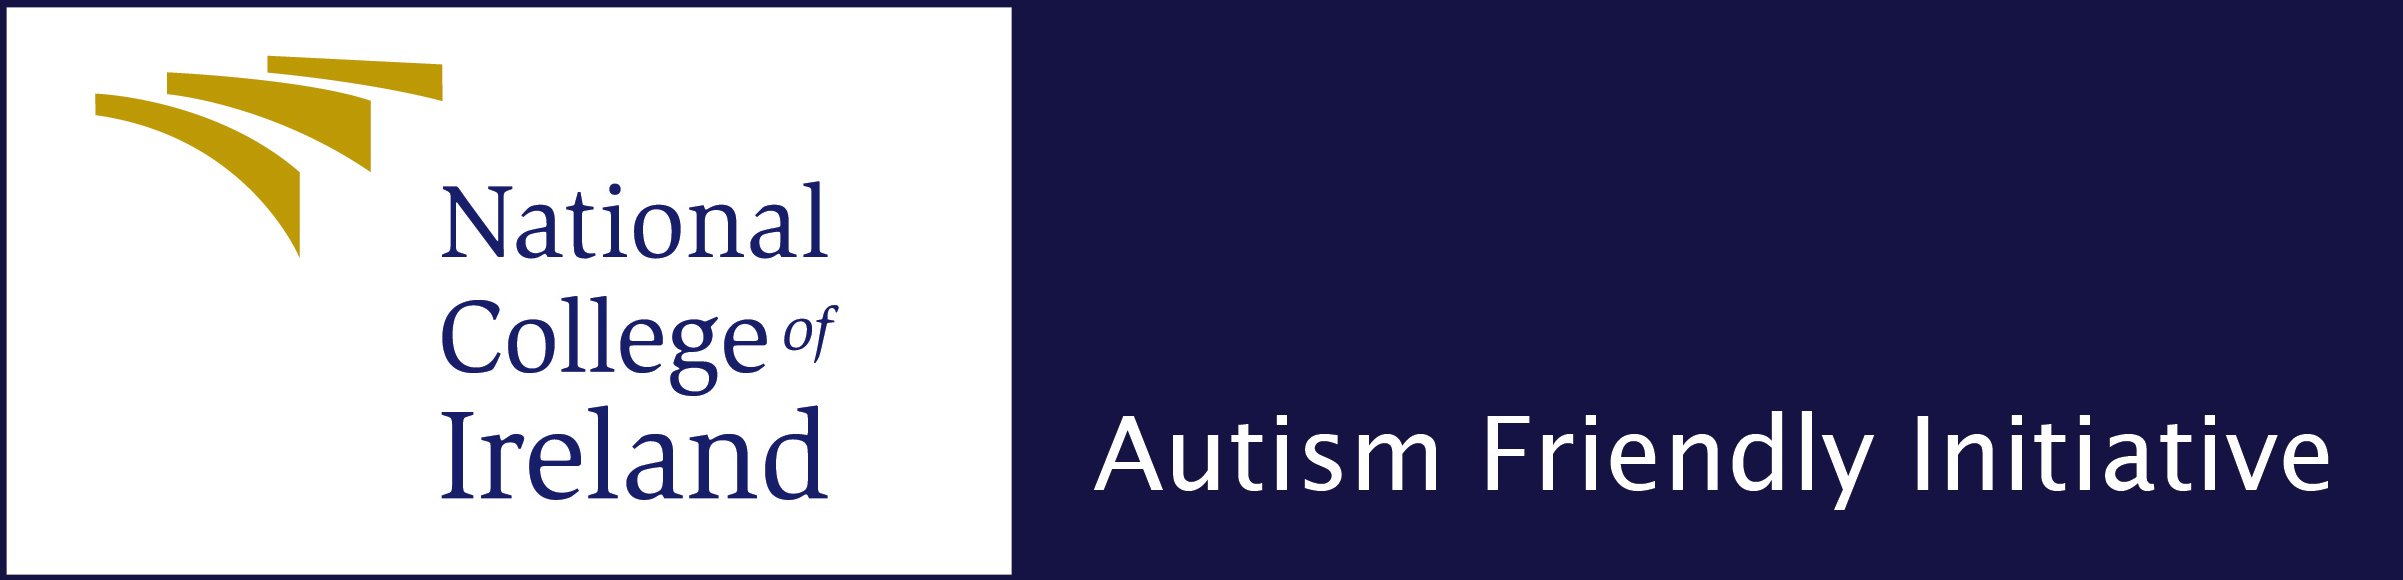 NCI_AutismFriendly_Logo-01